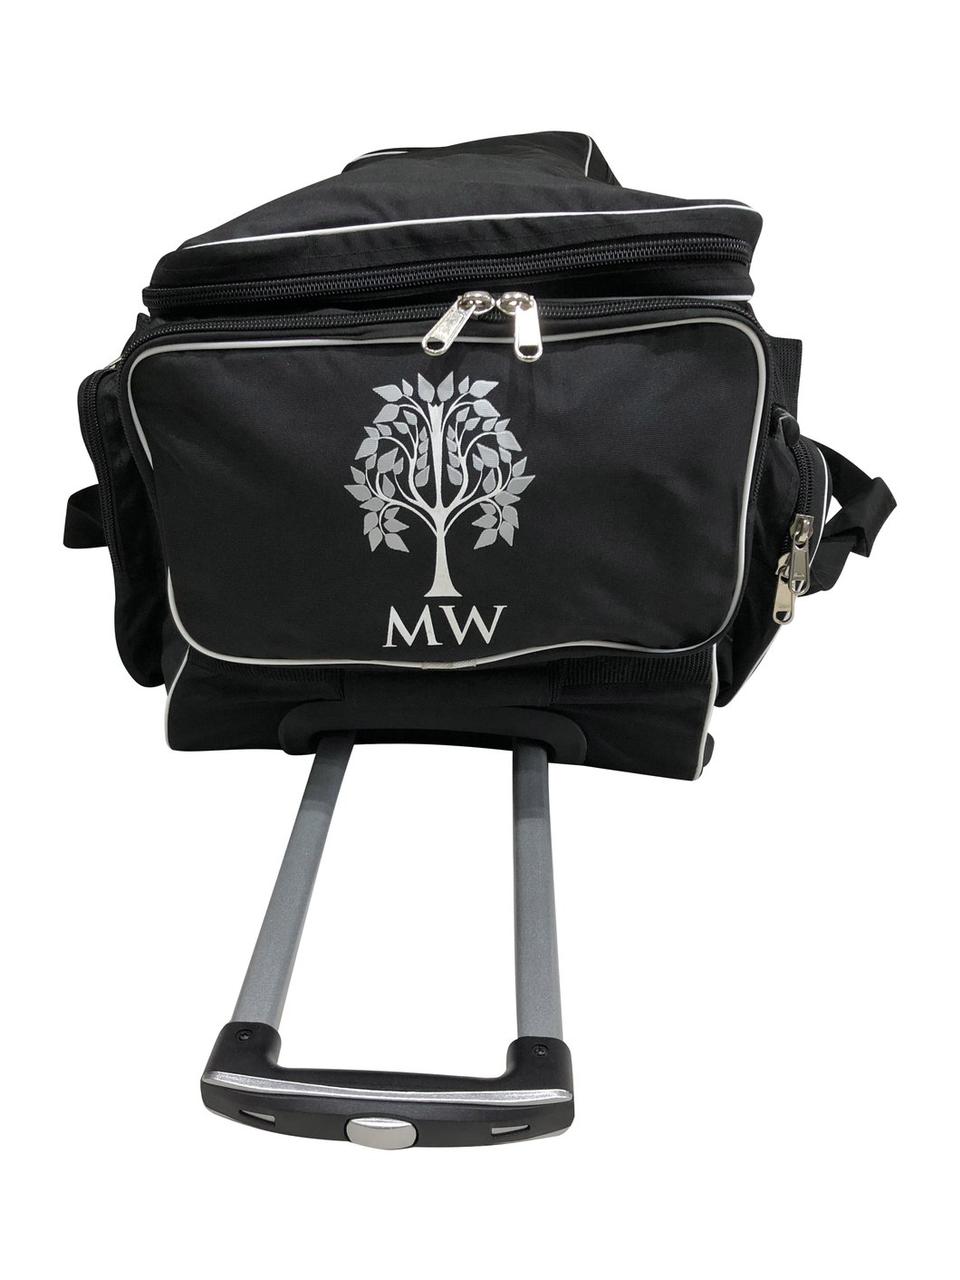 Wheel Deluxe Bag Kit Bag ecricstore 